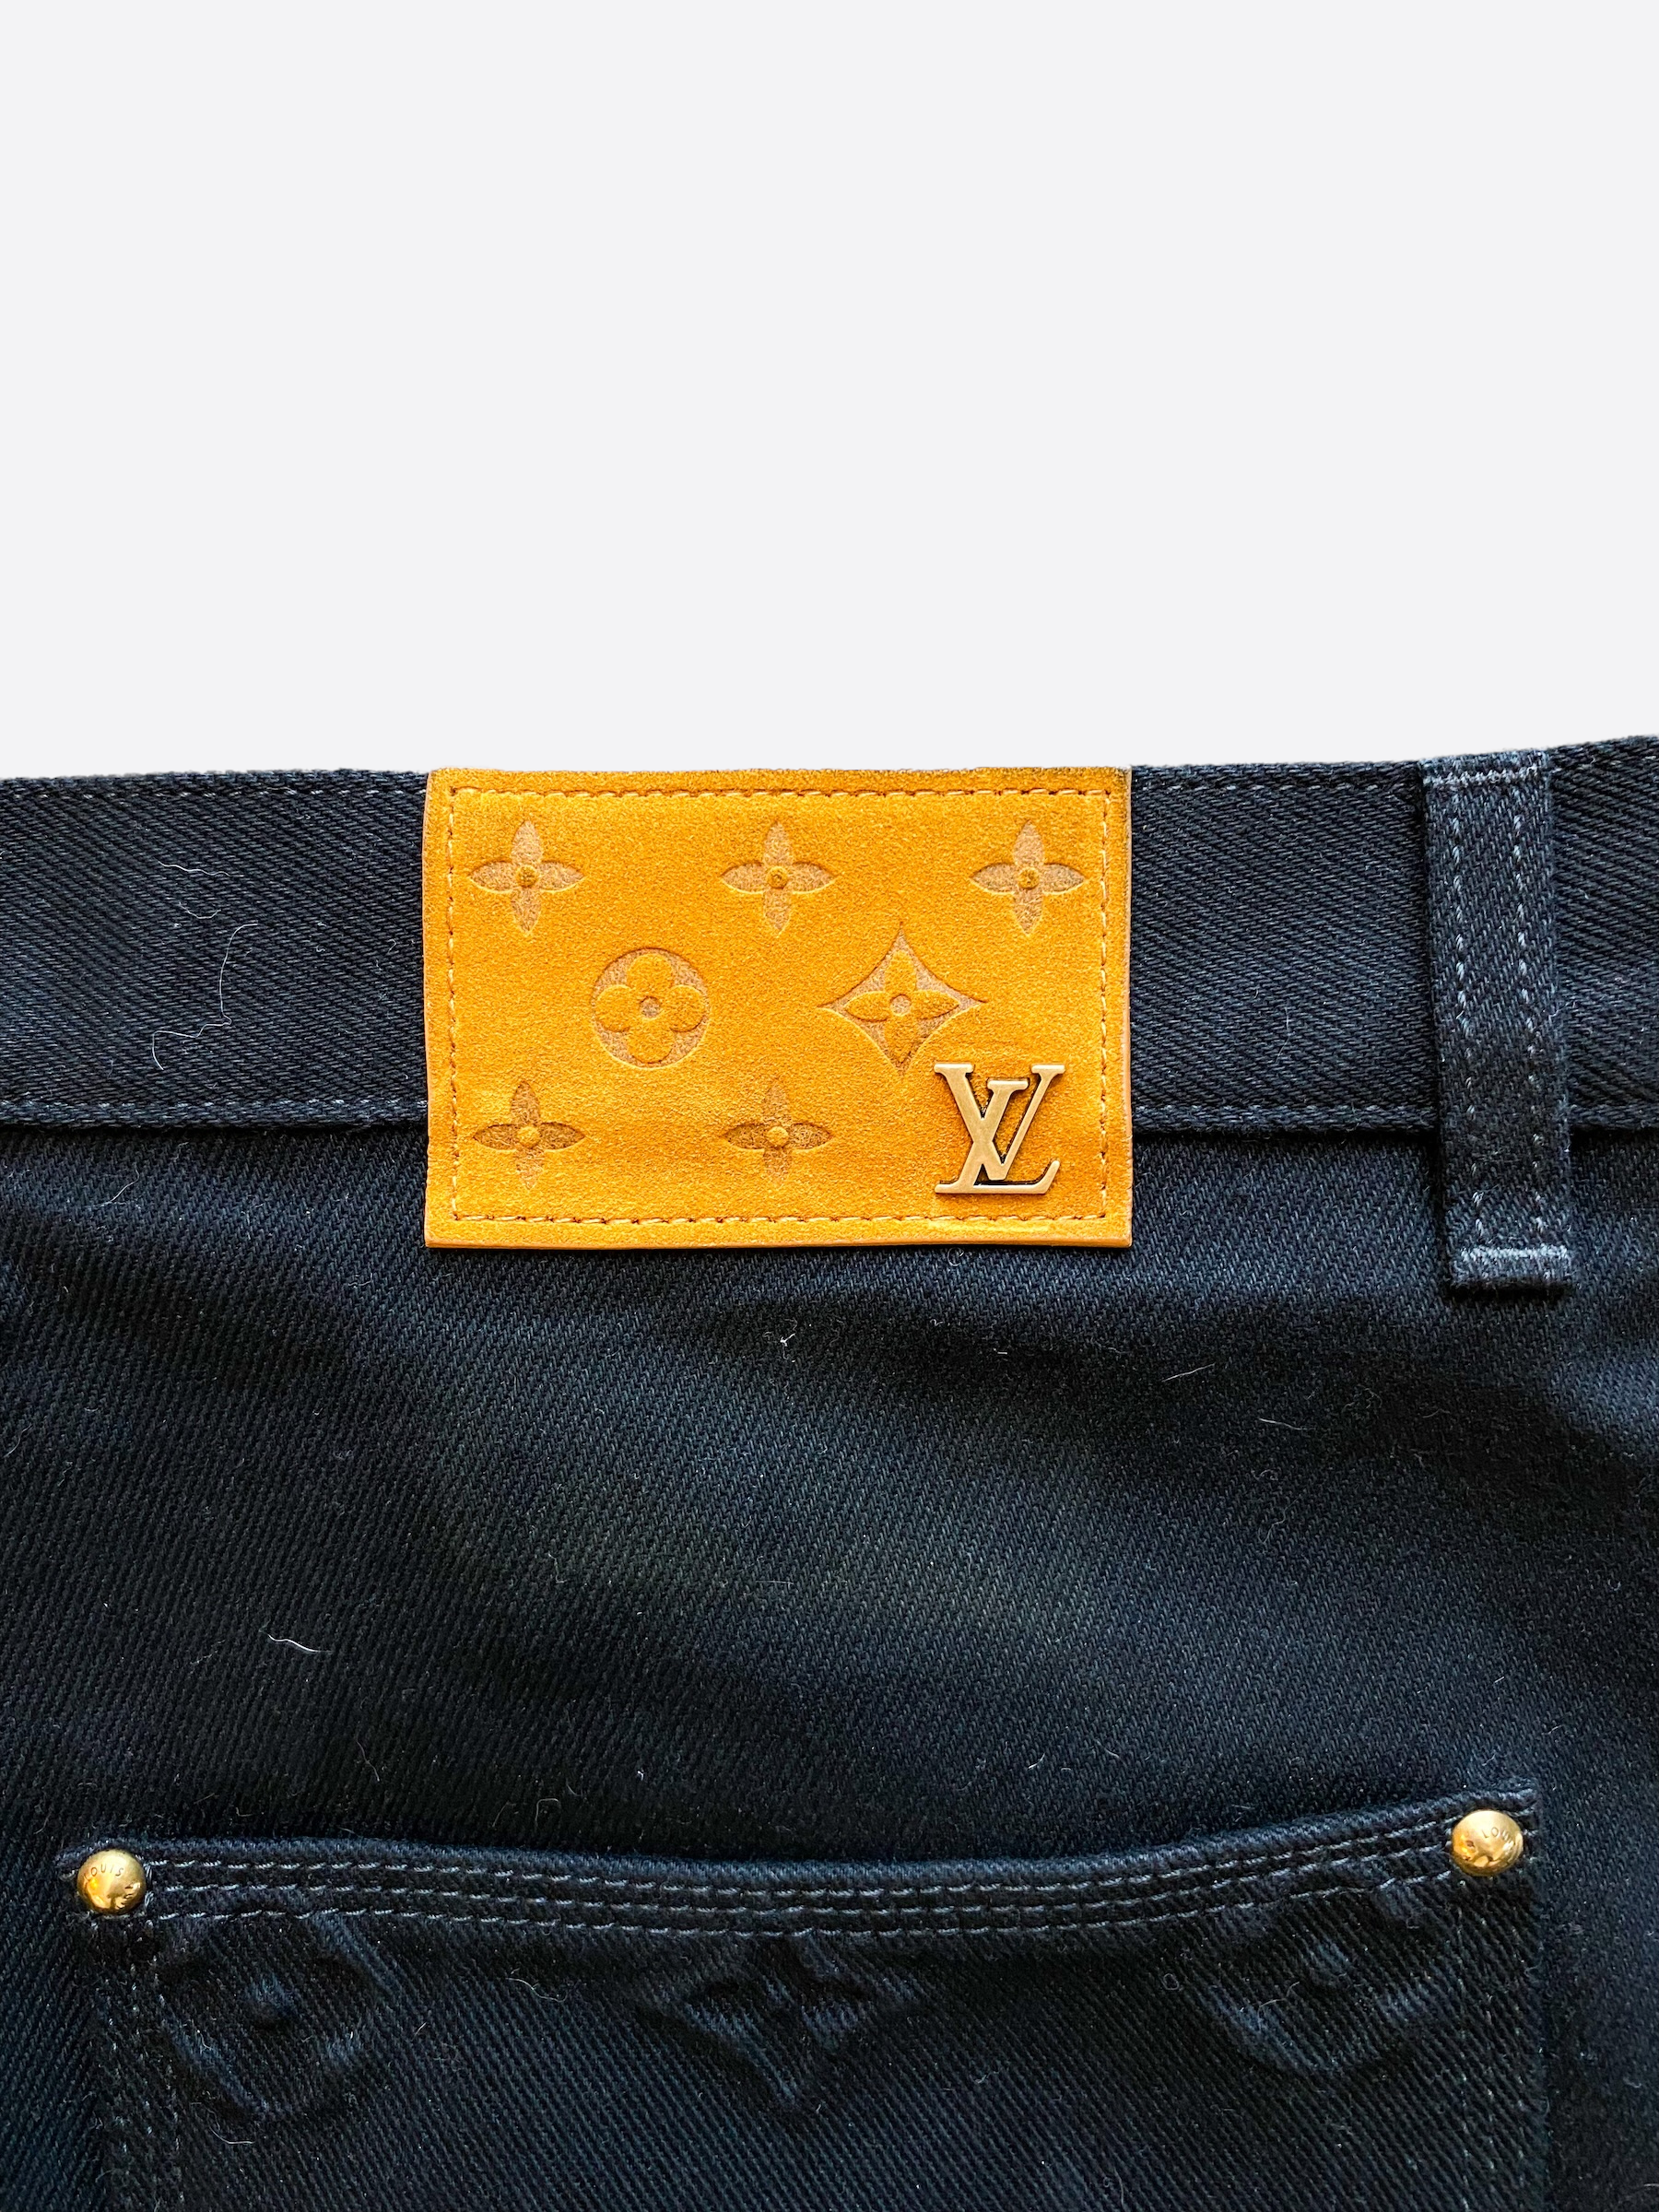 Louis Vuitton Monogram Workwear Denim Pants Brown Men's - FW21 - US